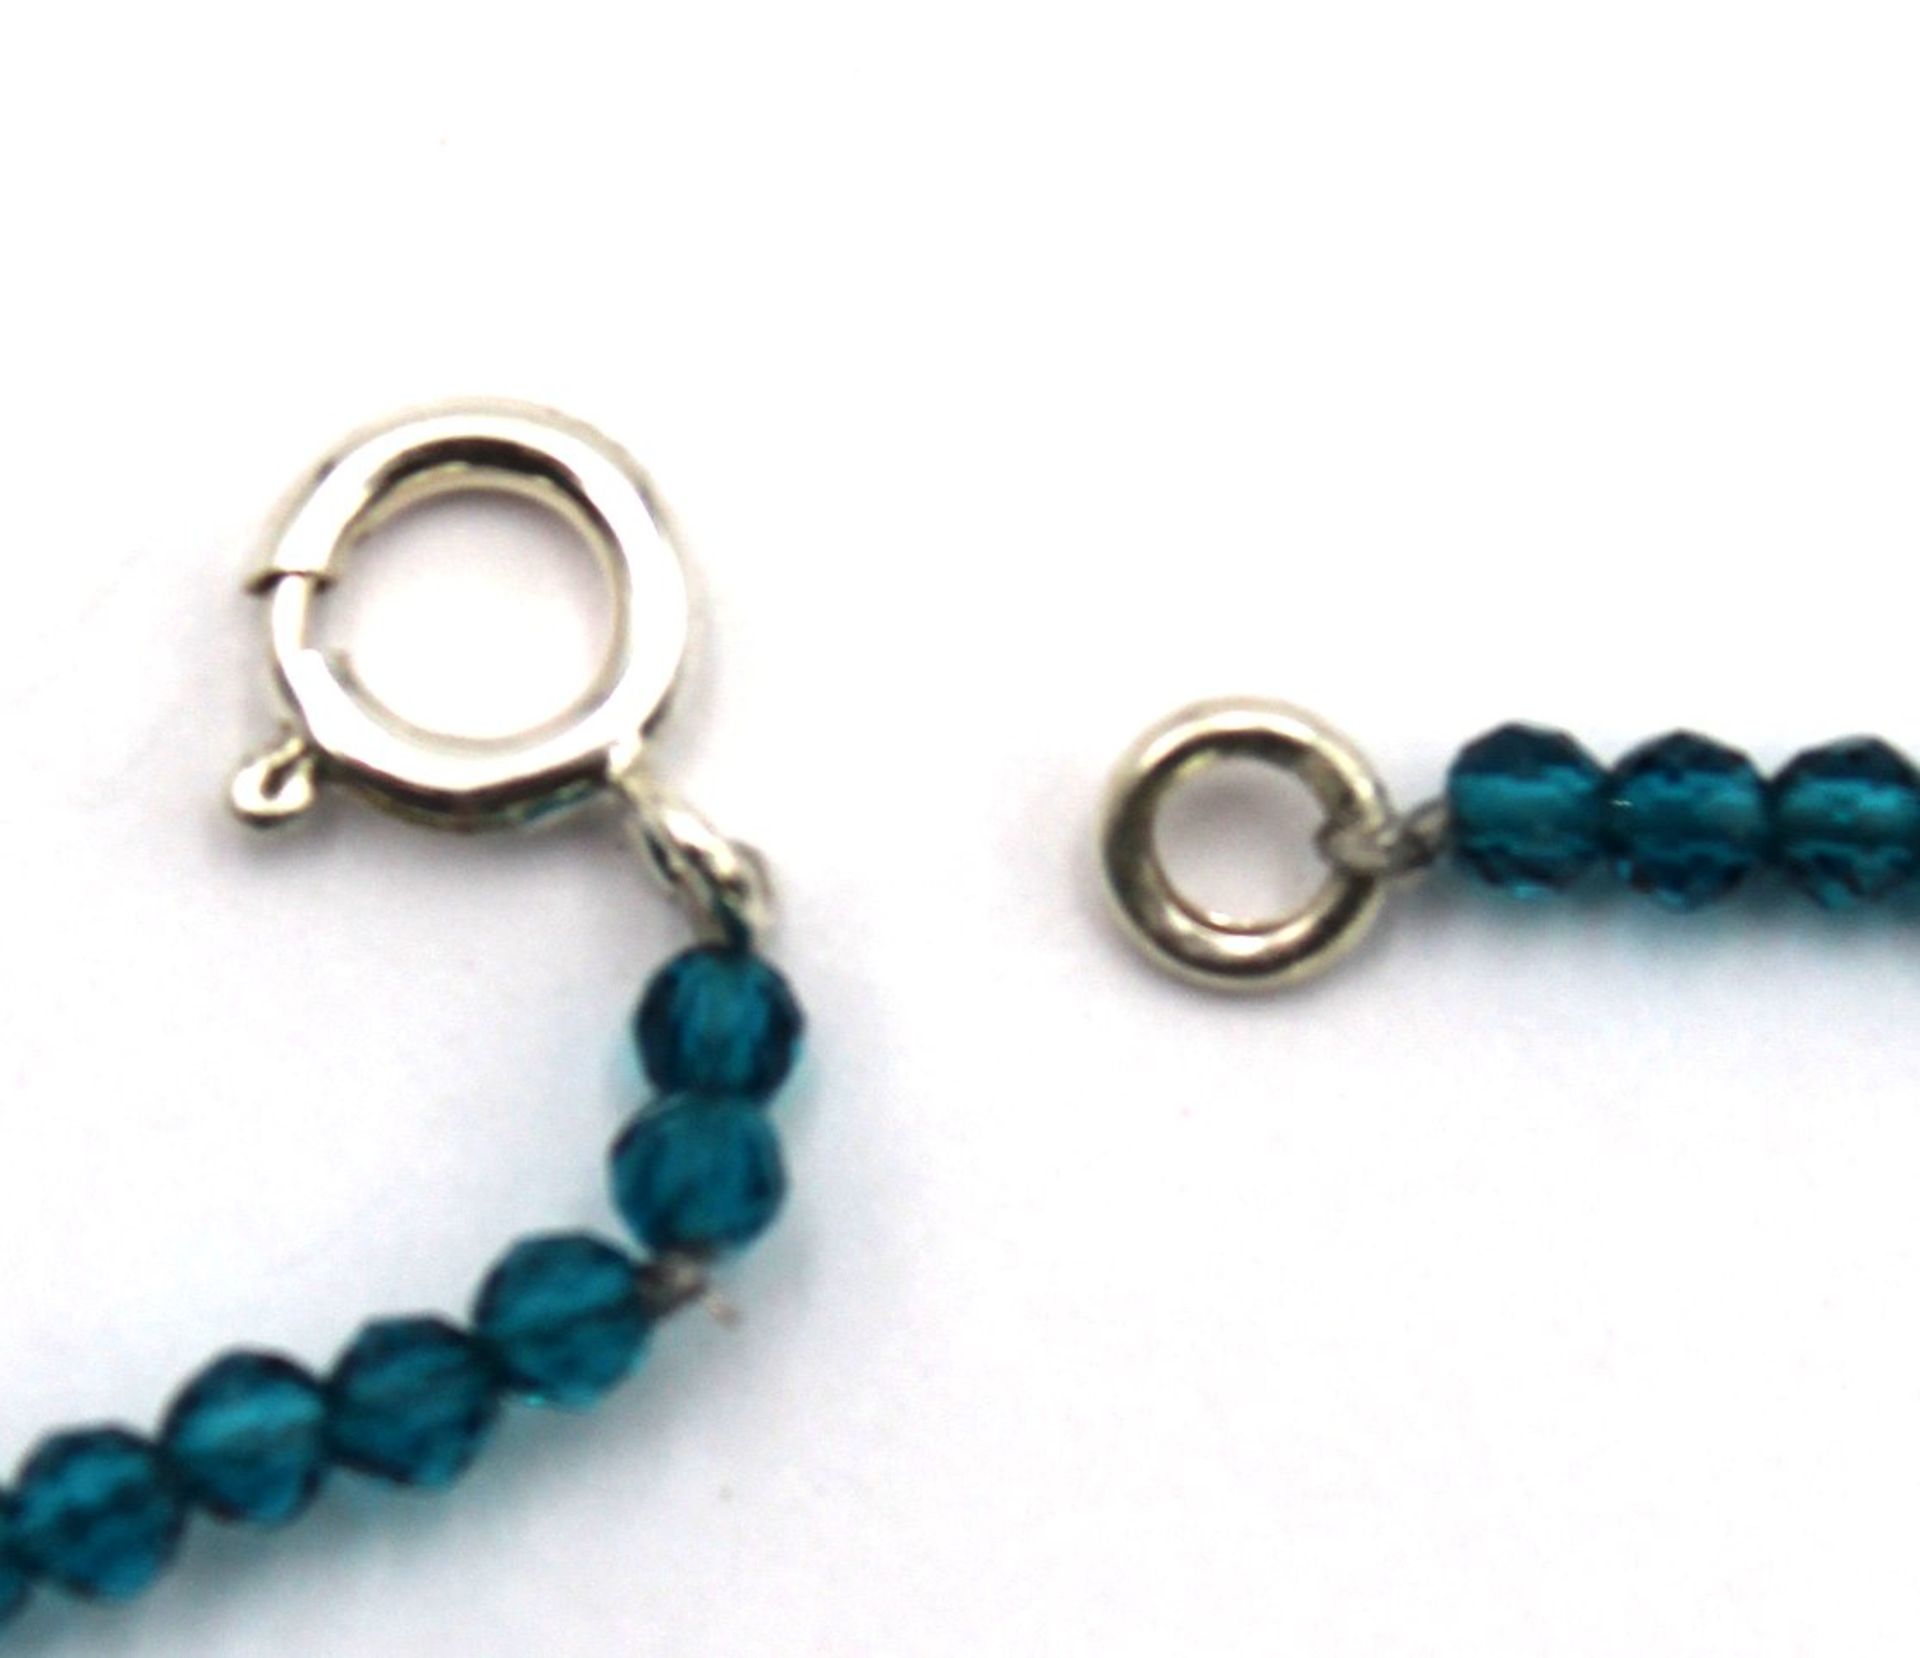 Halskette, blaue Steine sowie Citrin-Anhänger, ca. L-38cm. - Image 3 of 3